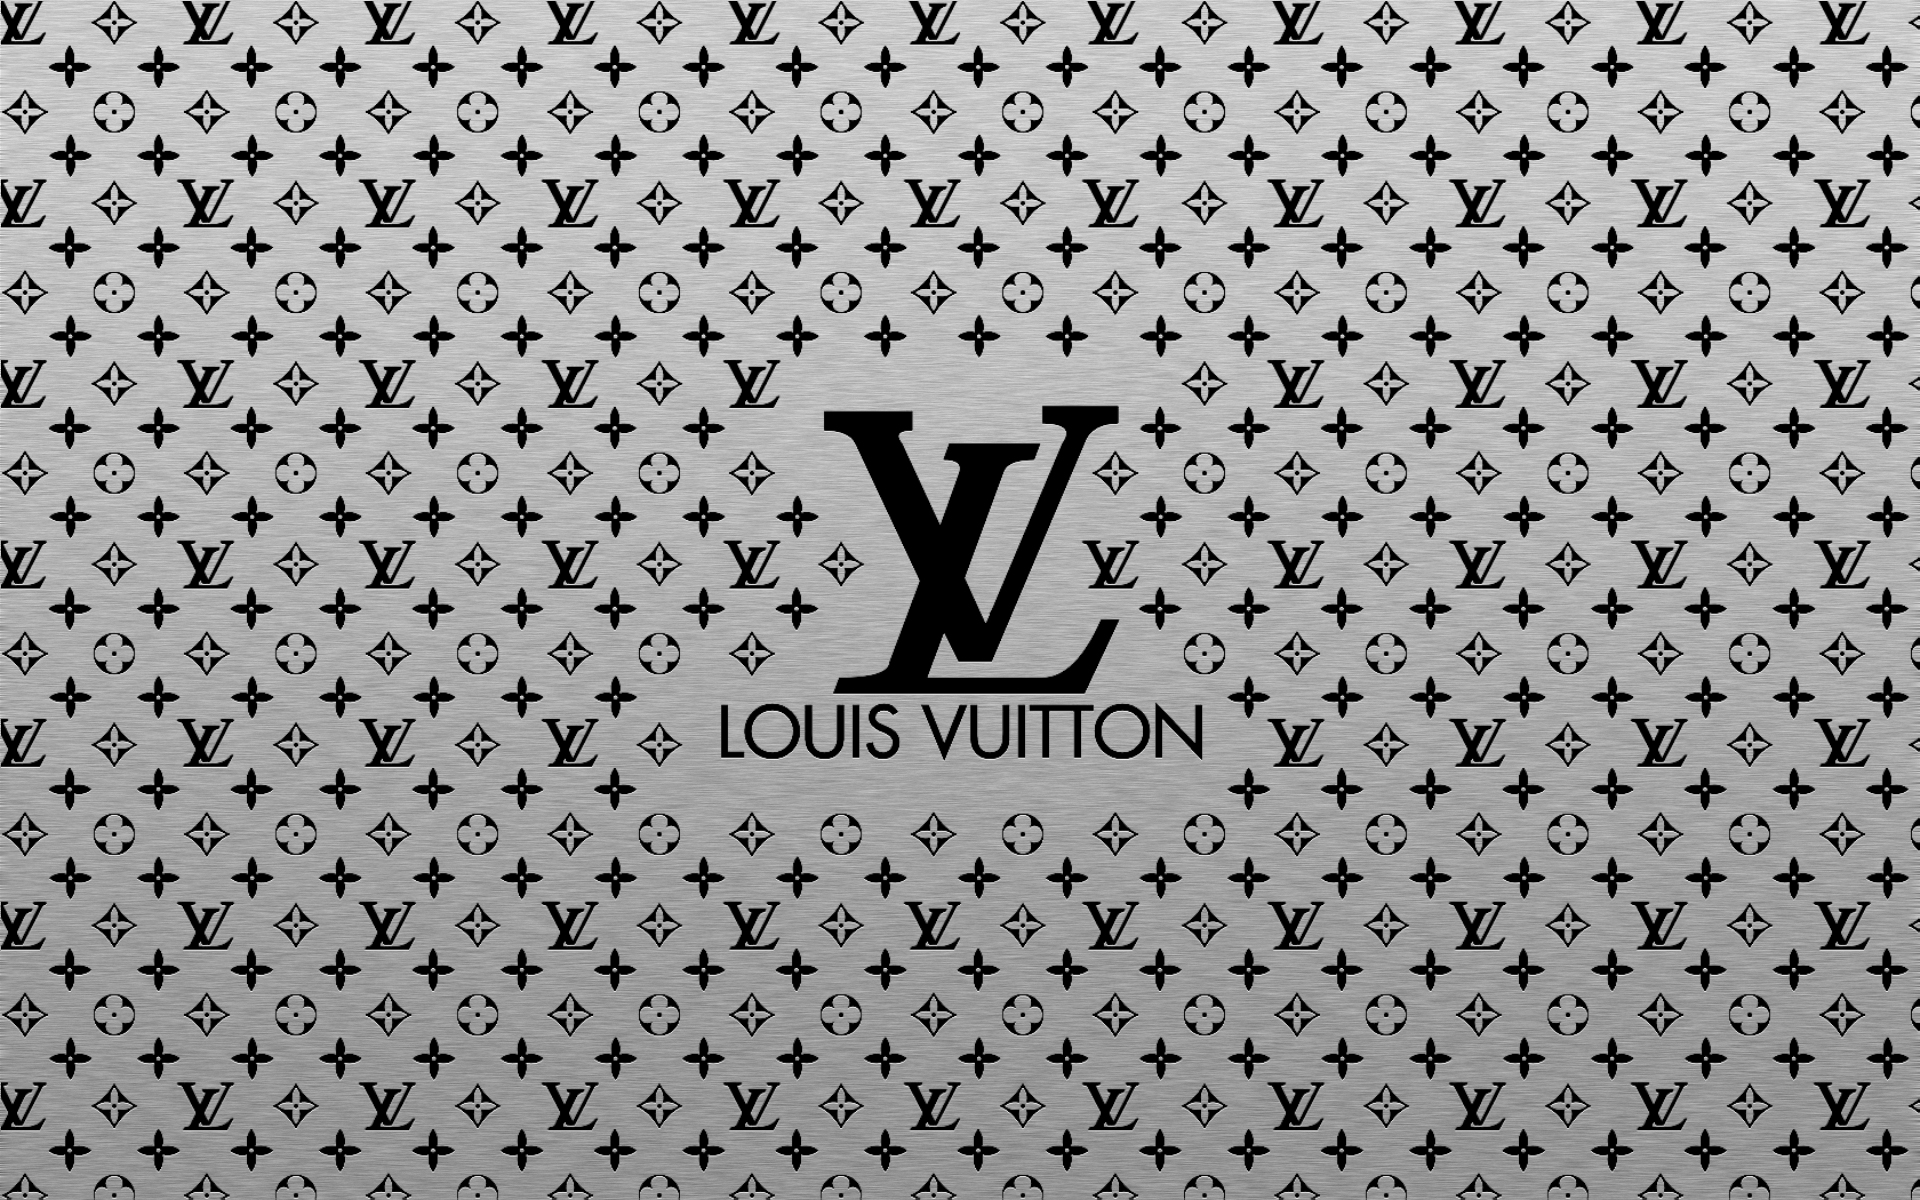 The Louis Vuitton logo  Fond d'écran téléphone, Fond d'écran